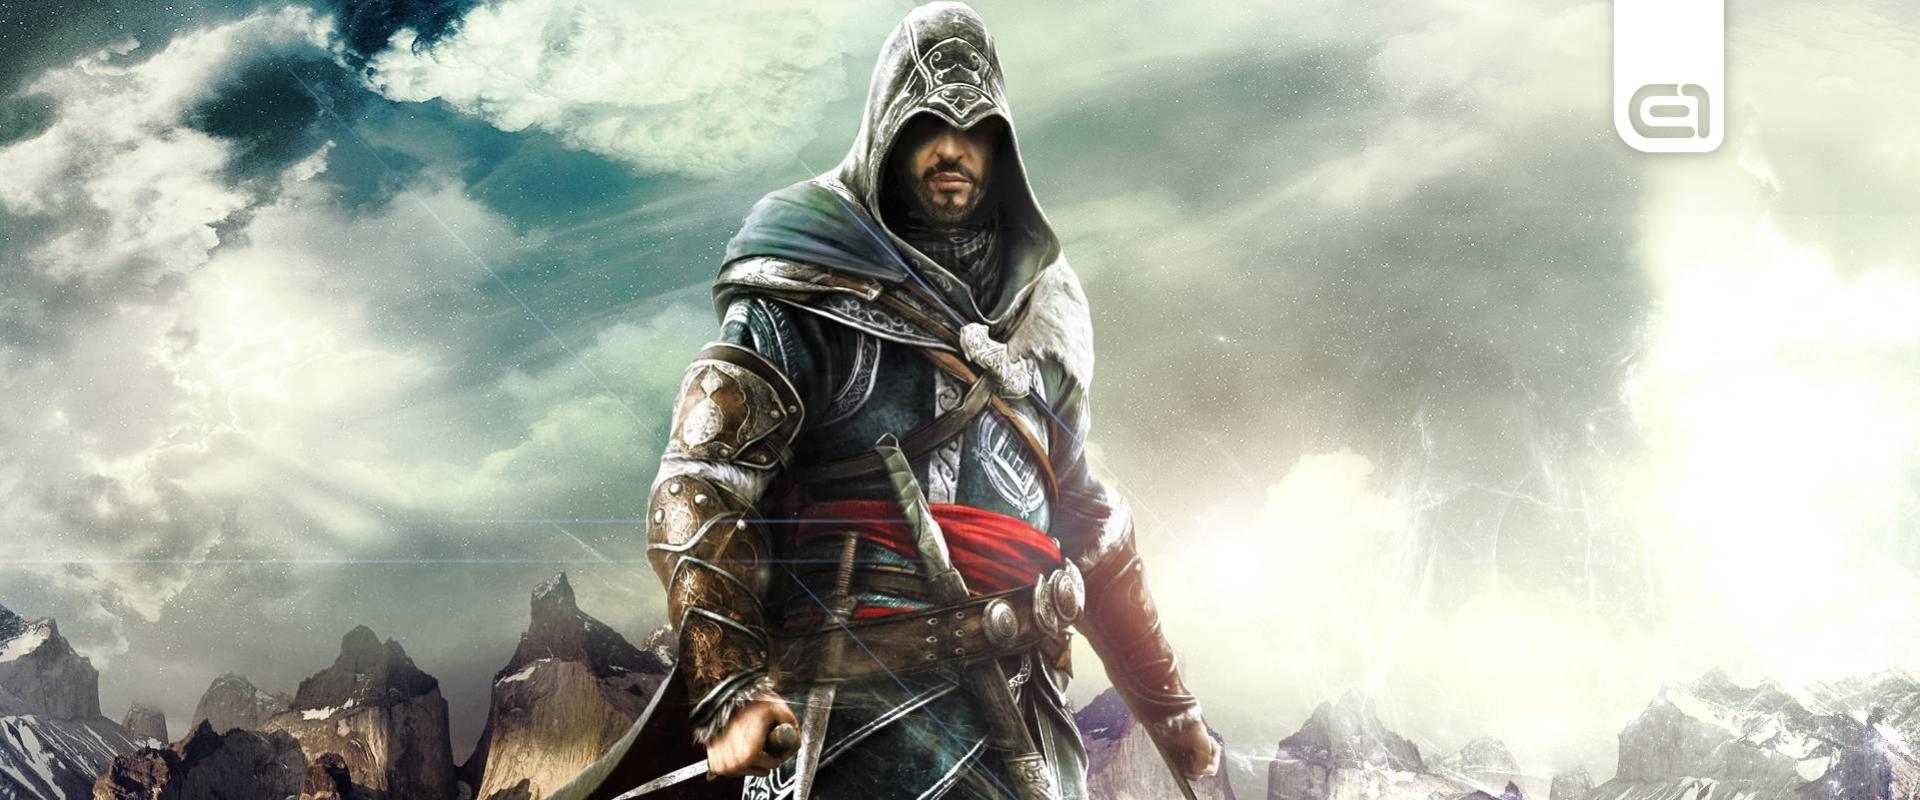 Assassin's Creedből sosem elég, 10 cím is fejlesztés alatt van